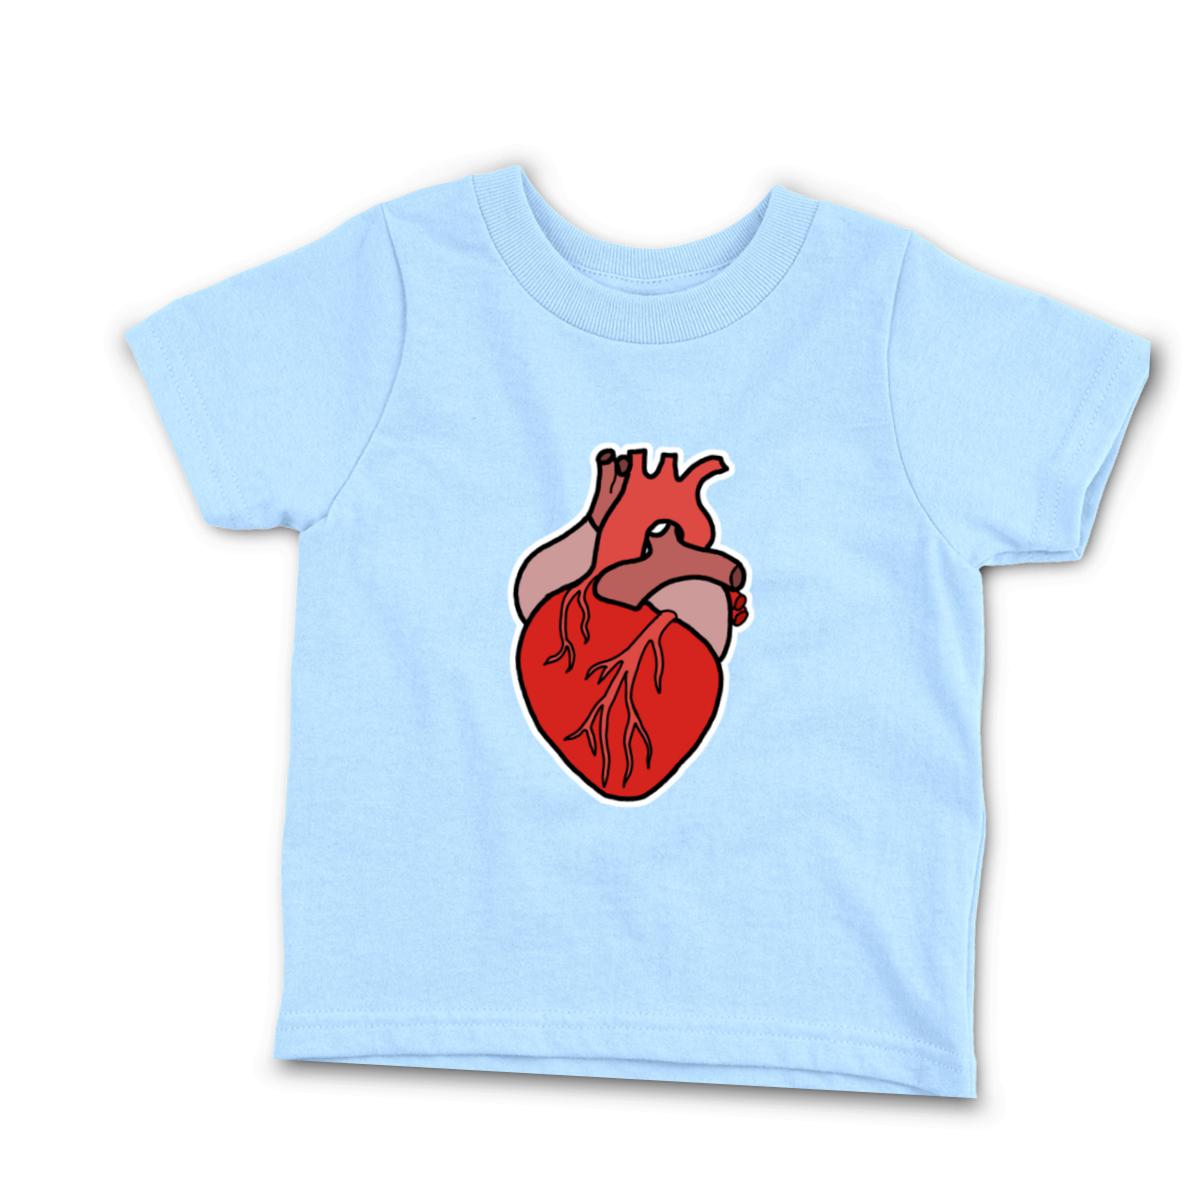 Illustrative Heart Infant Tee 24M light-blue